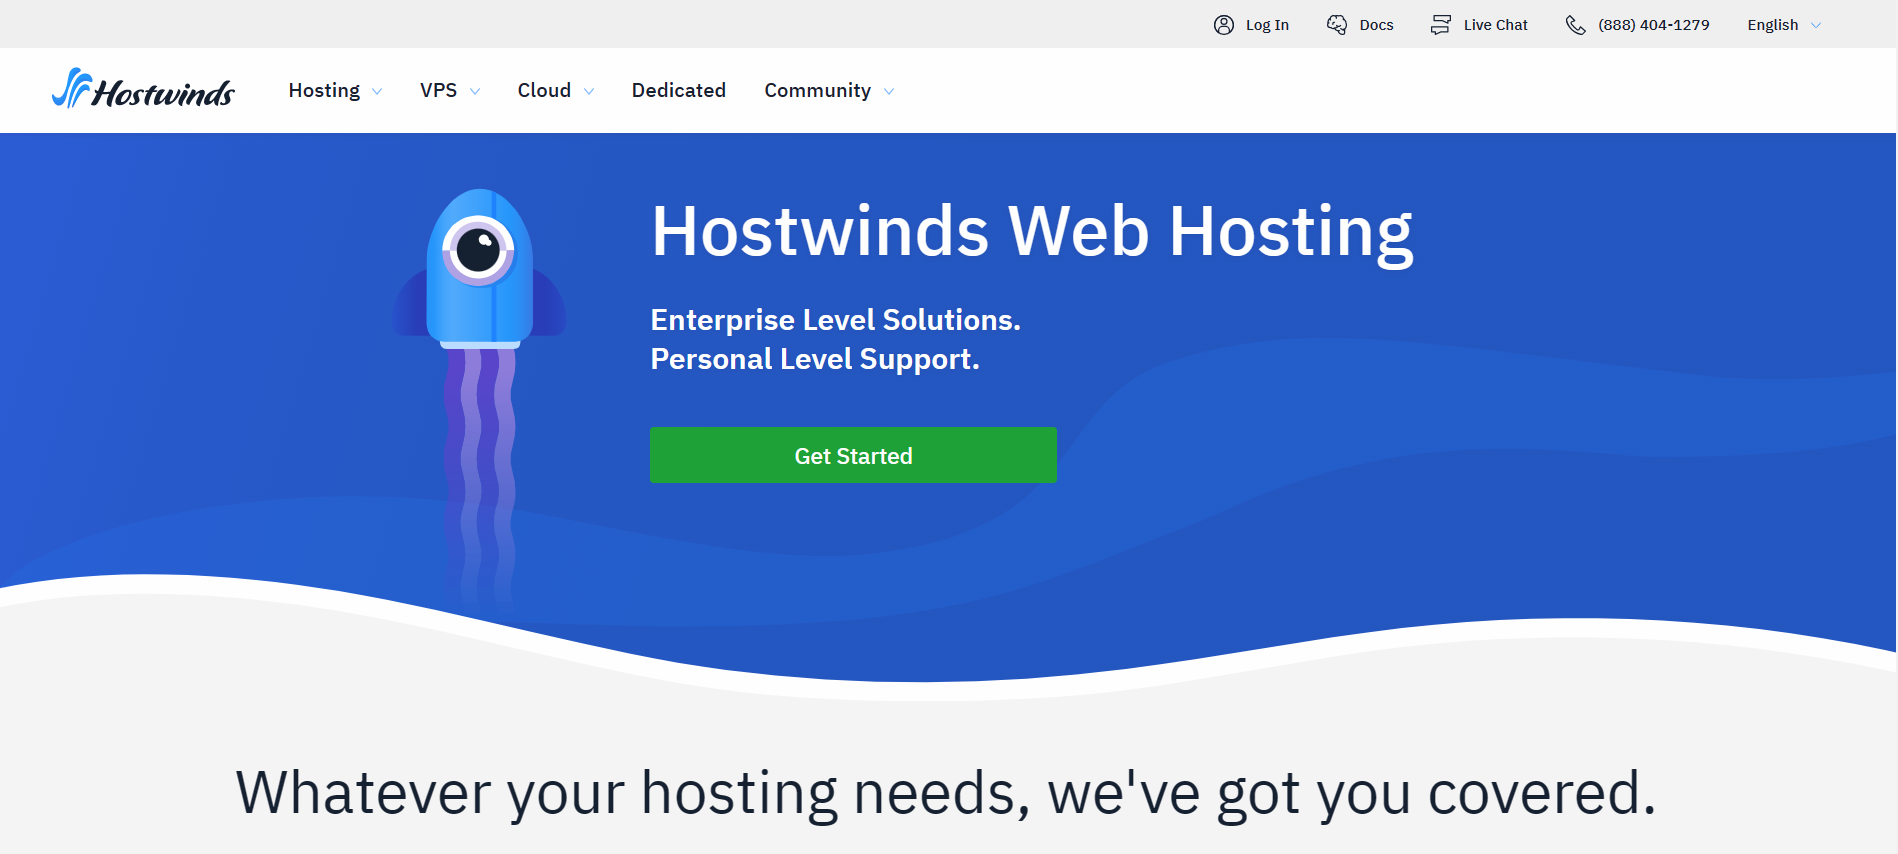 Hostwinds Web Hosting Home Page